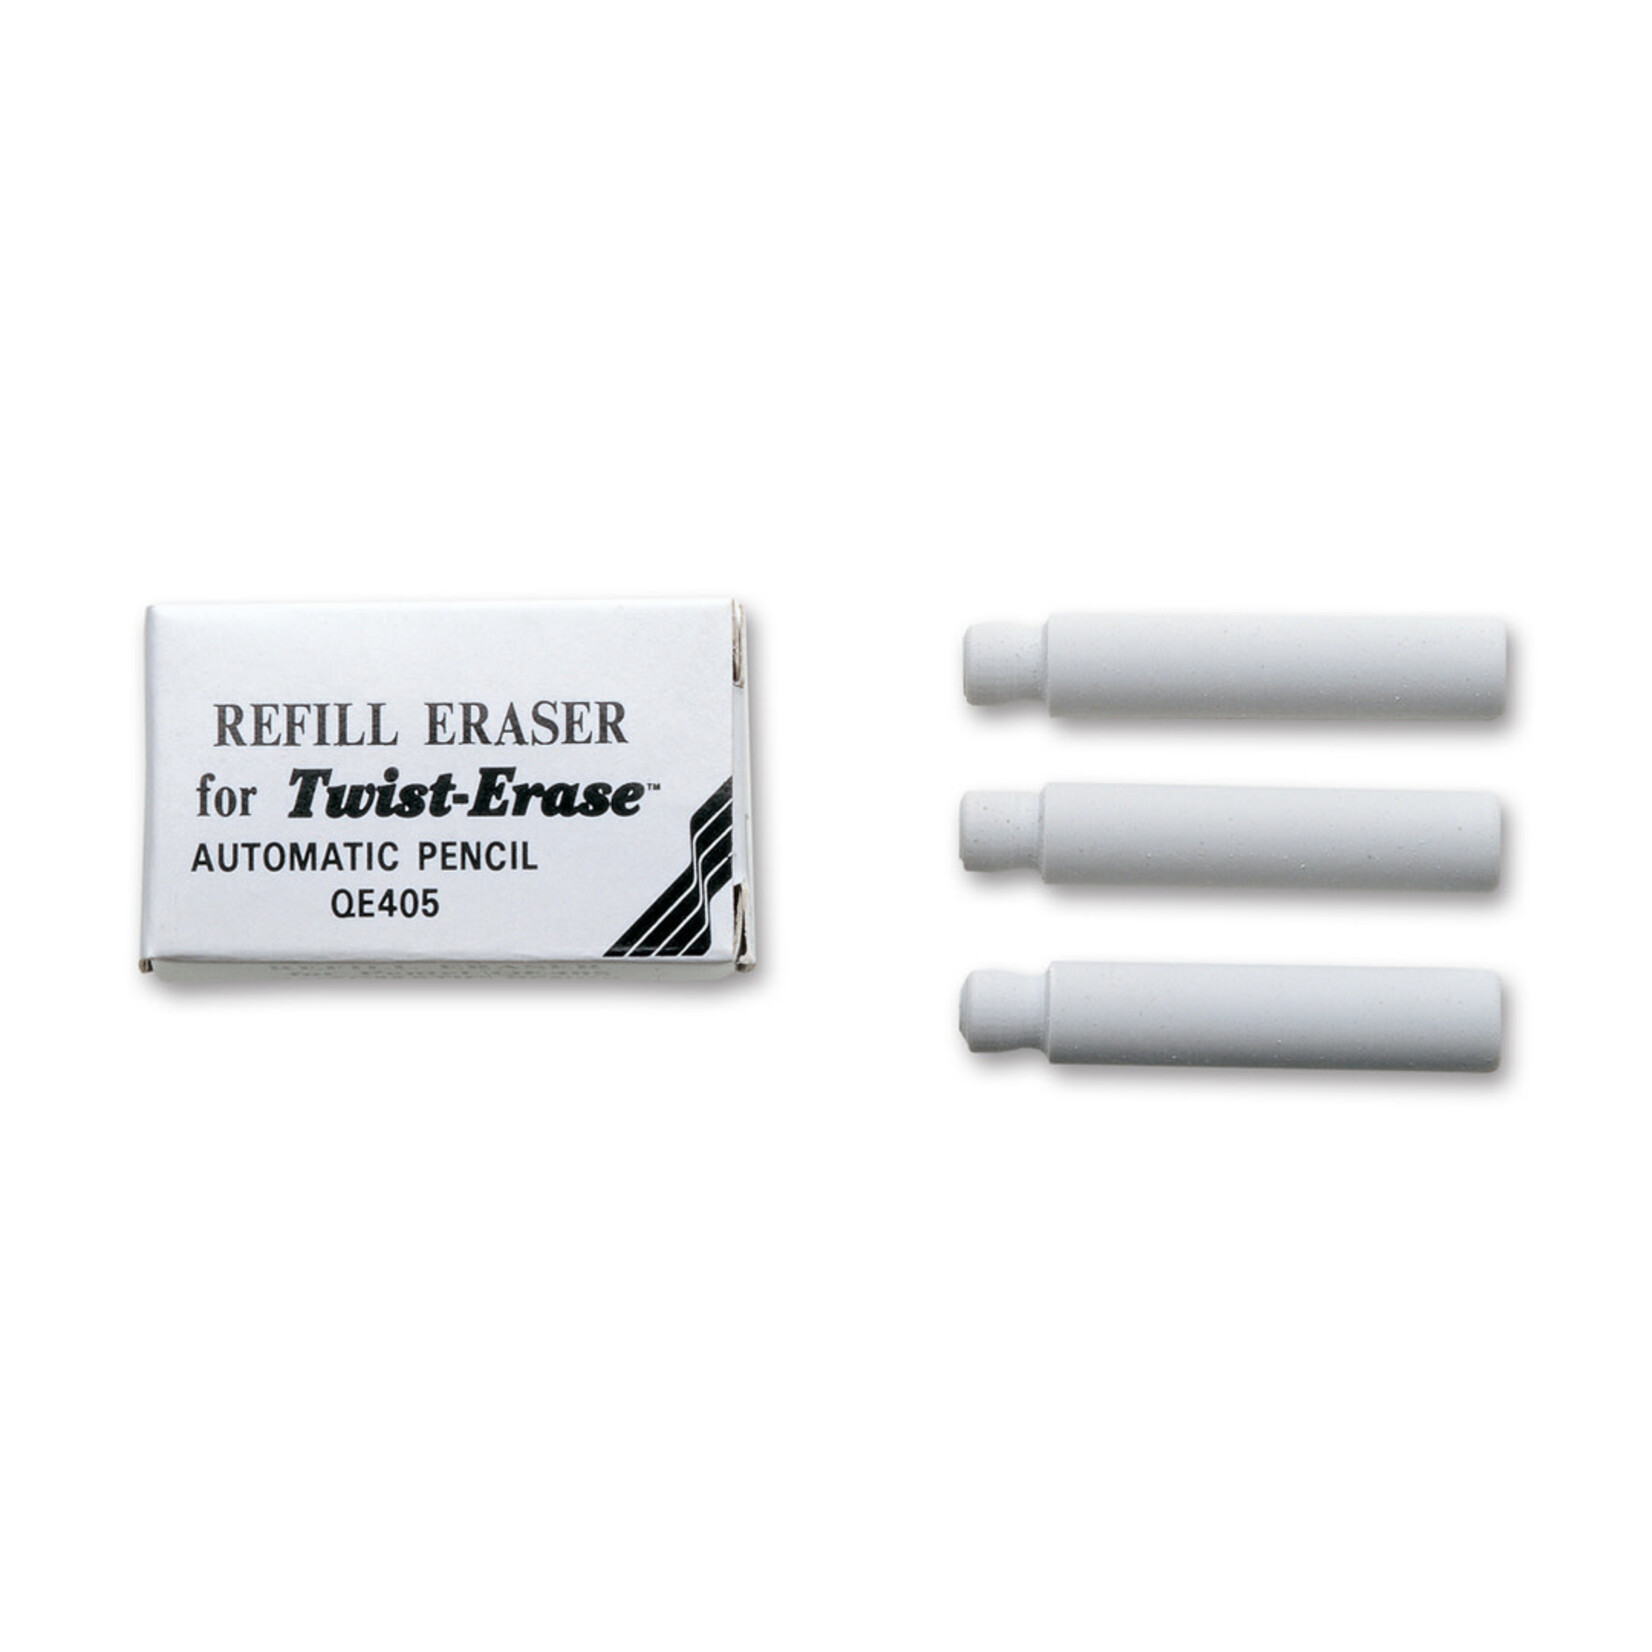 Pentel Refill Eraser for Twist-Erase